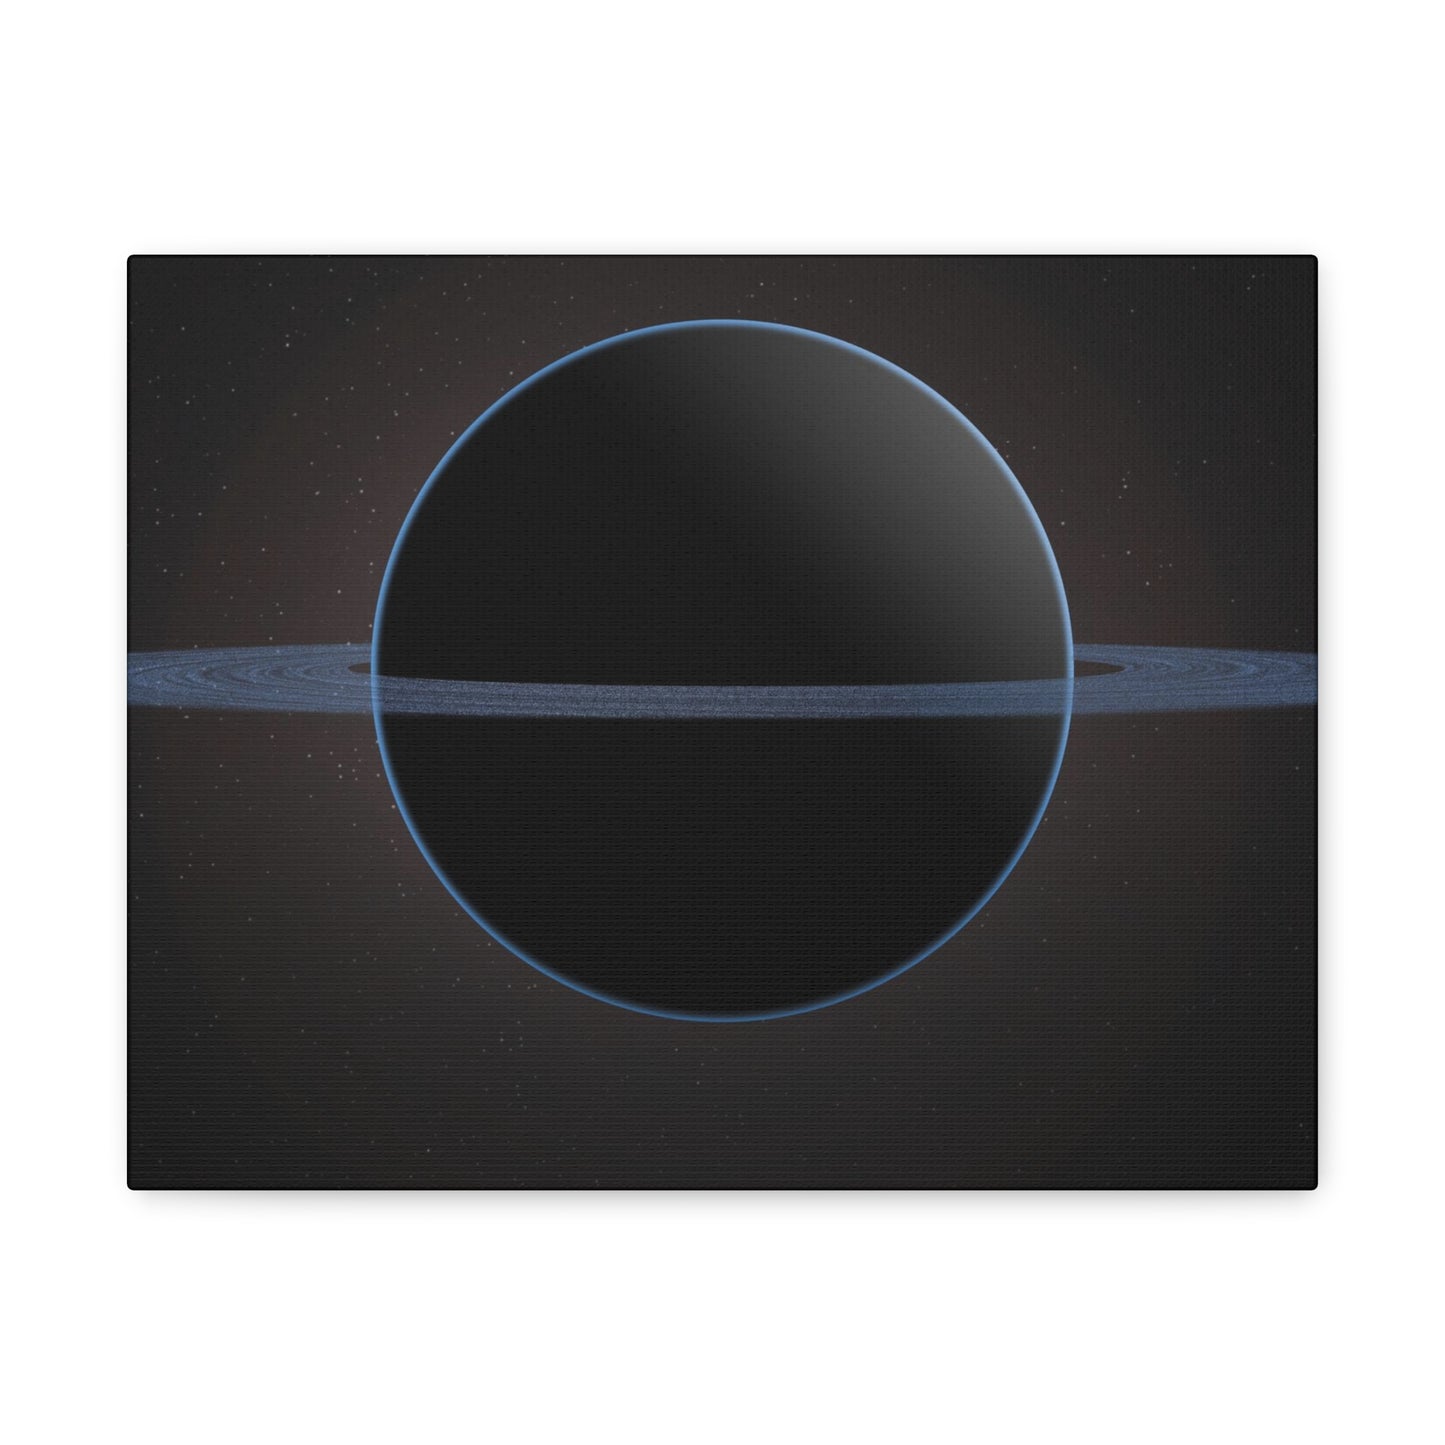 Black Sphere